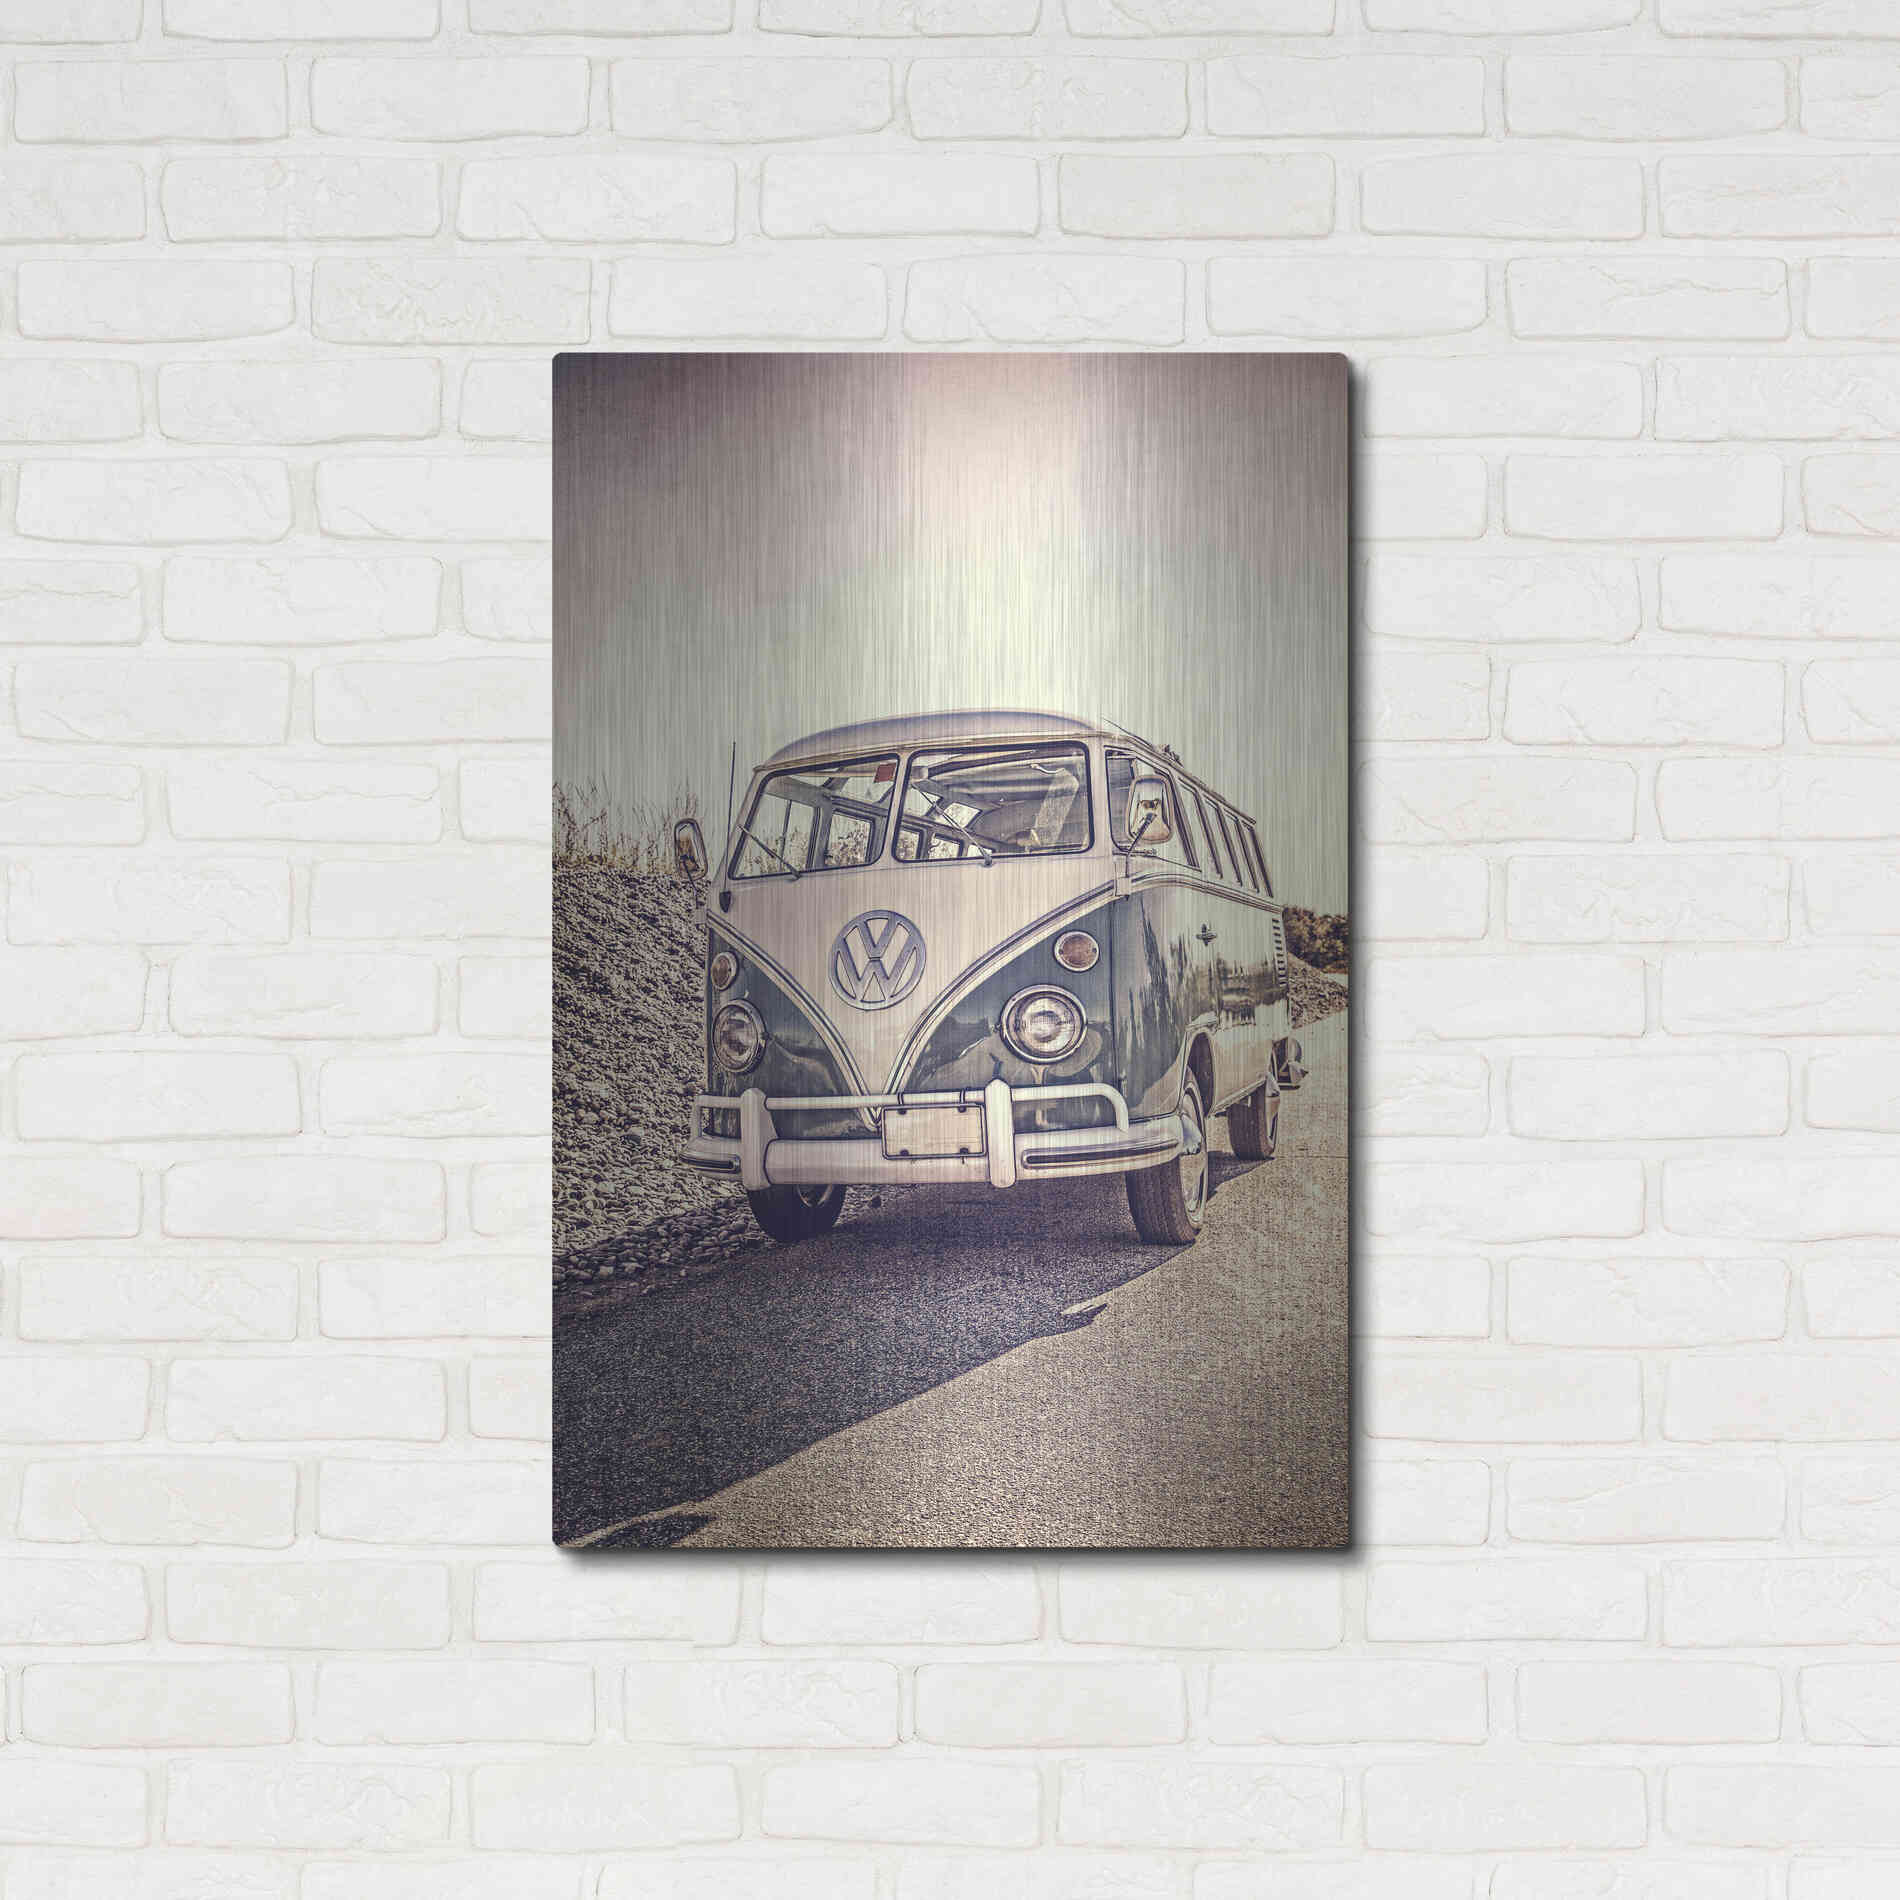 Luxe Metal Art 'Surfers’ Vintage VW Bus' by Edward M. Fielding, Metal Wall Art,24x36